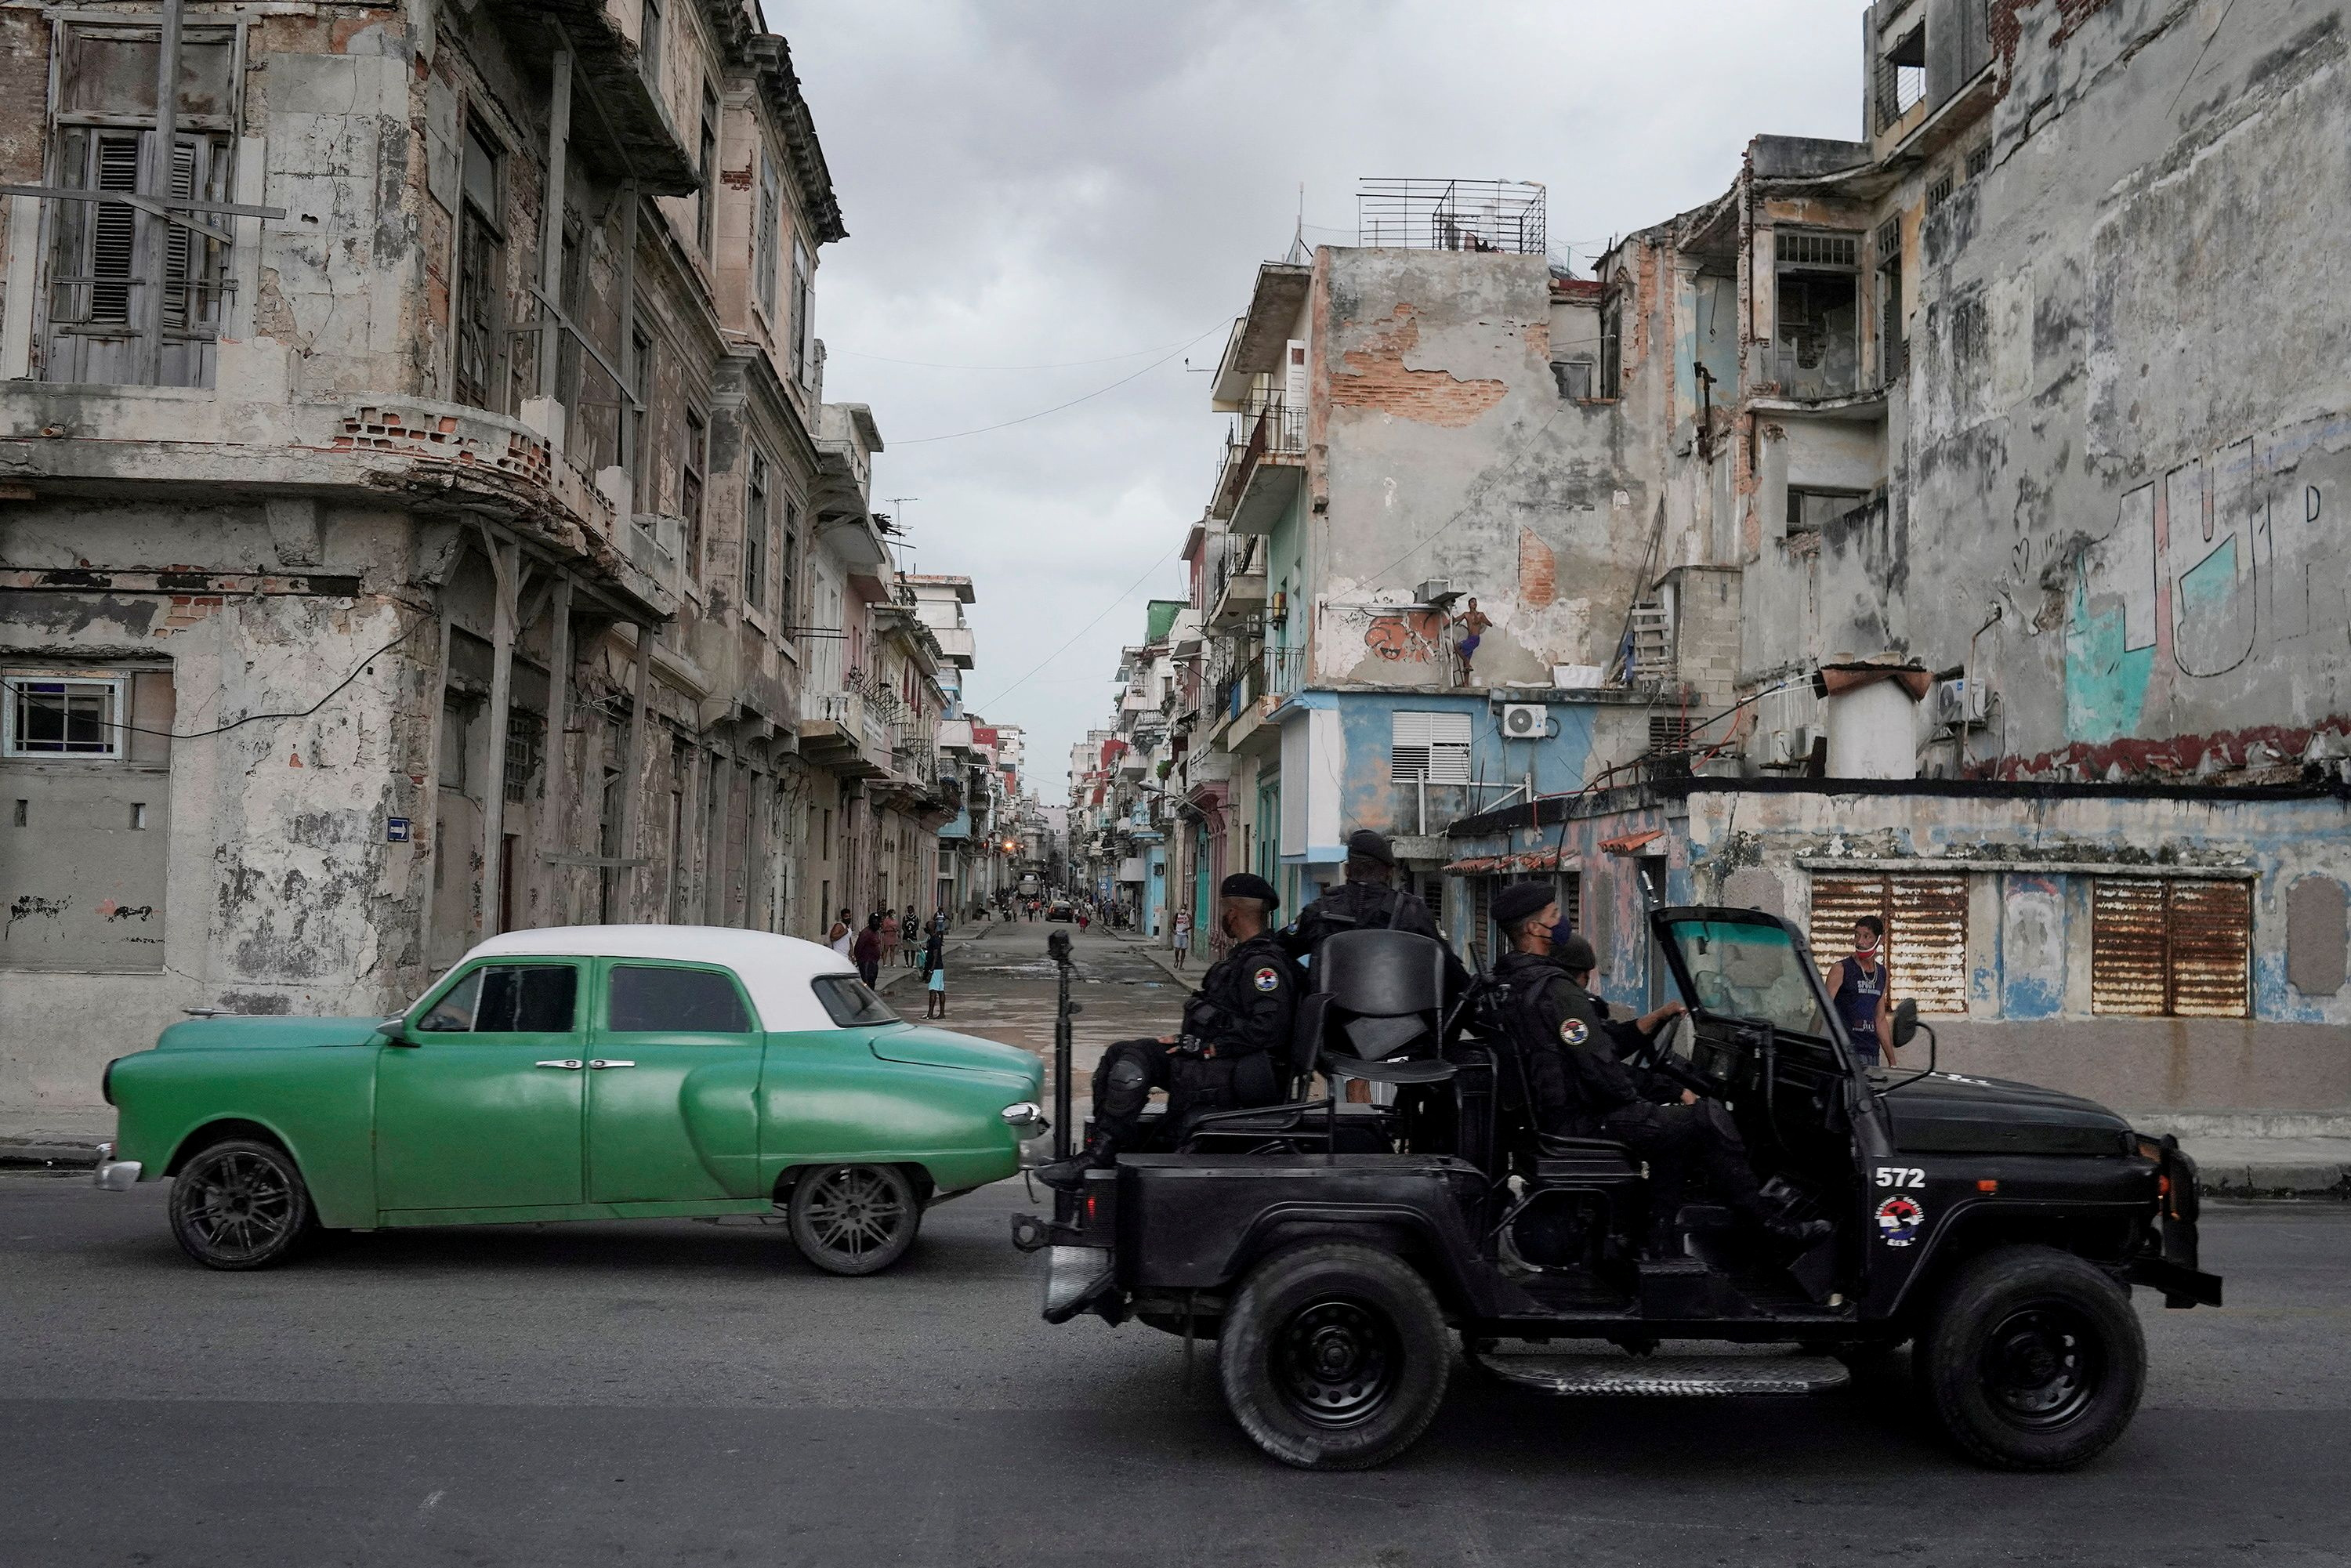 FOTO DE ARCHIVO: Un vehículo de las fuerzas especiales pasa junto a un coche de época en el centro de La Habana, Cuba, 13 de julio de 2021. REUTERS/Alexandre Meneghini/File Photo